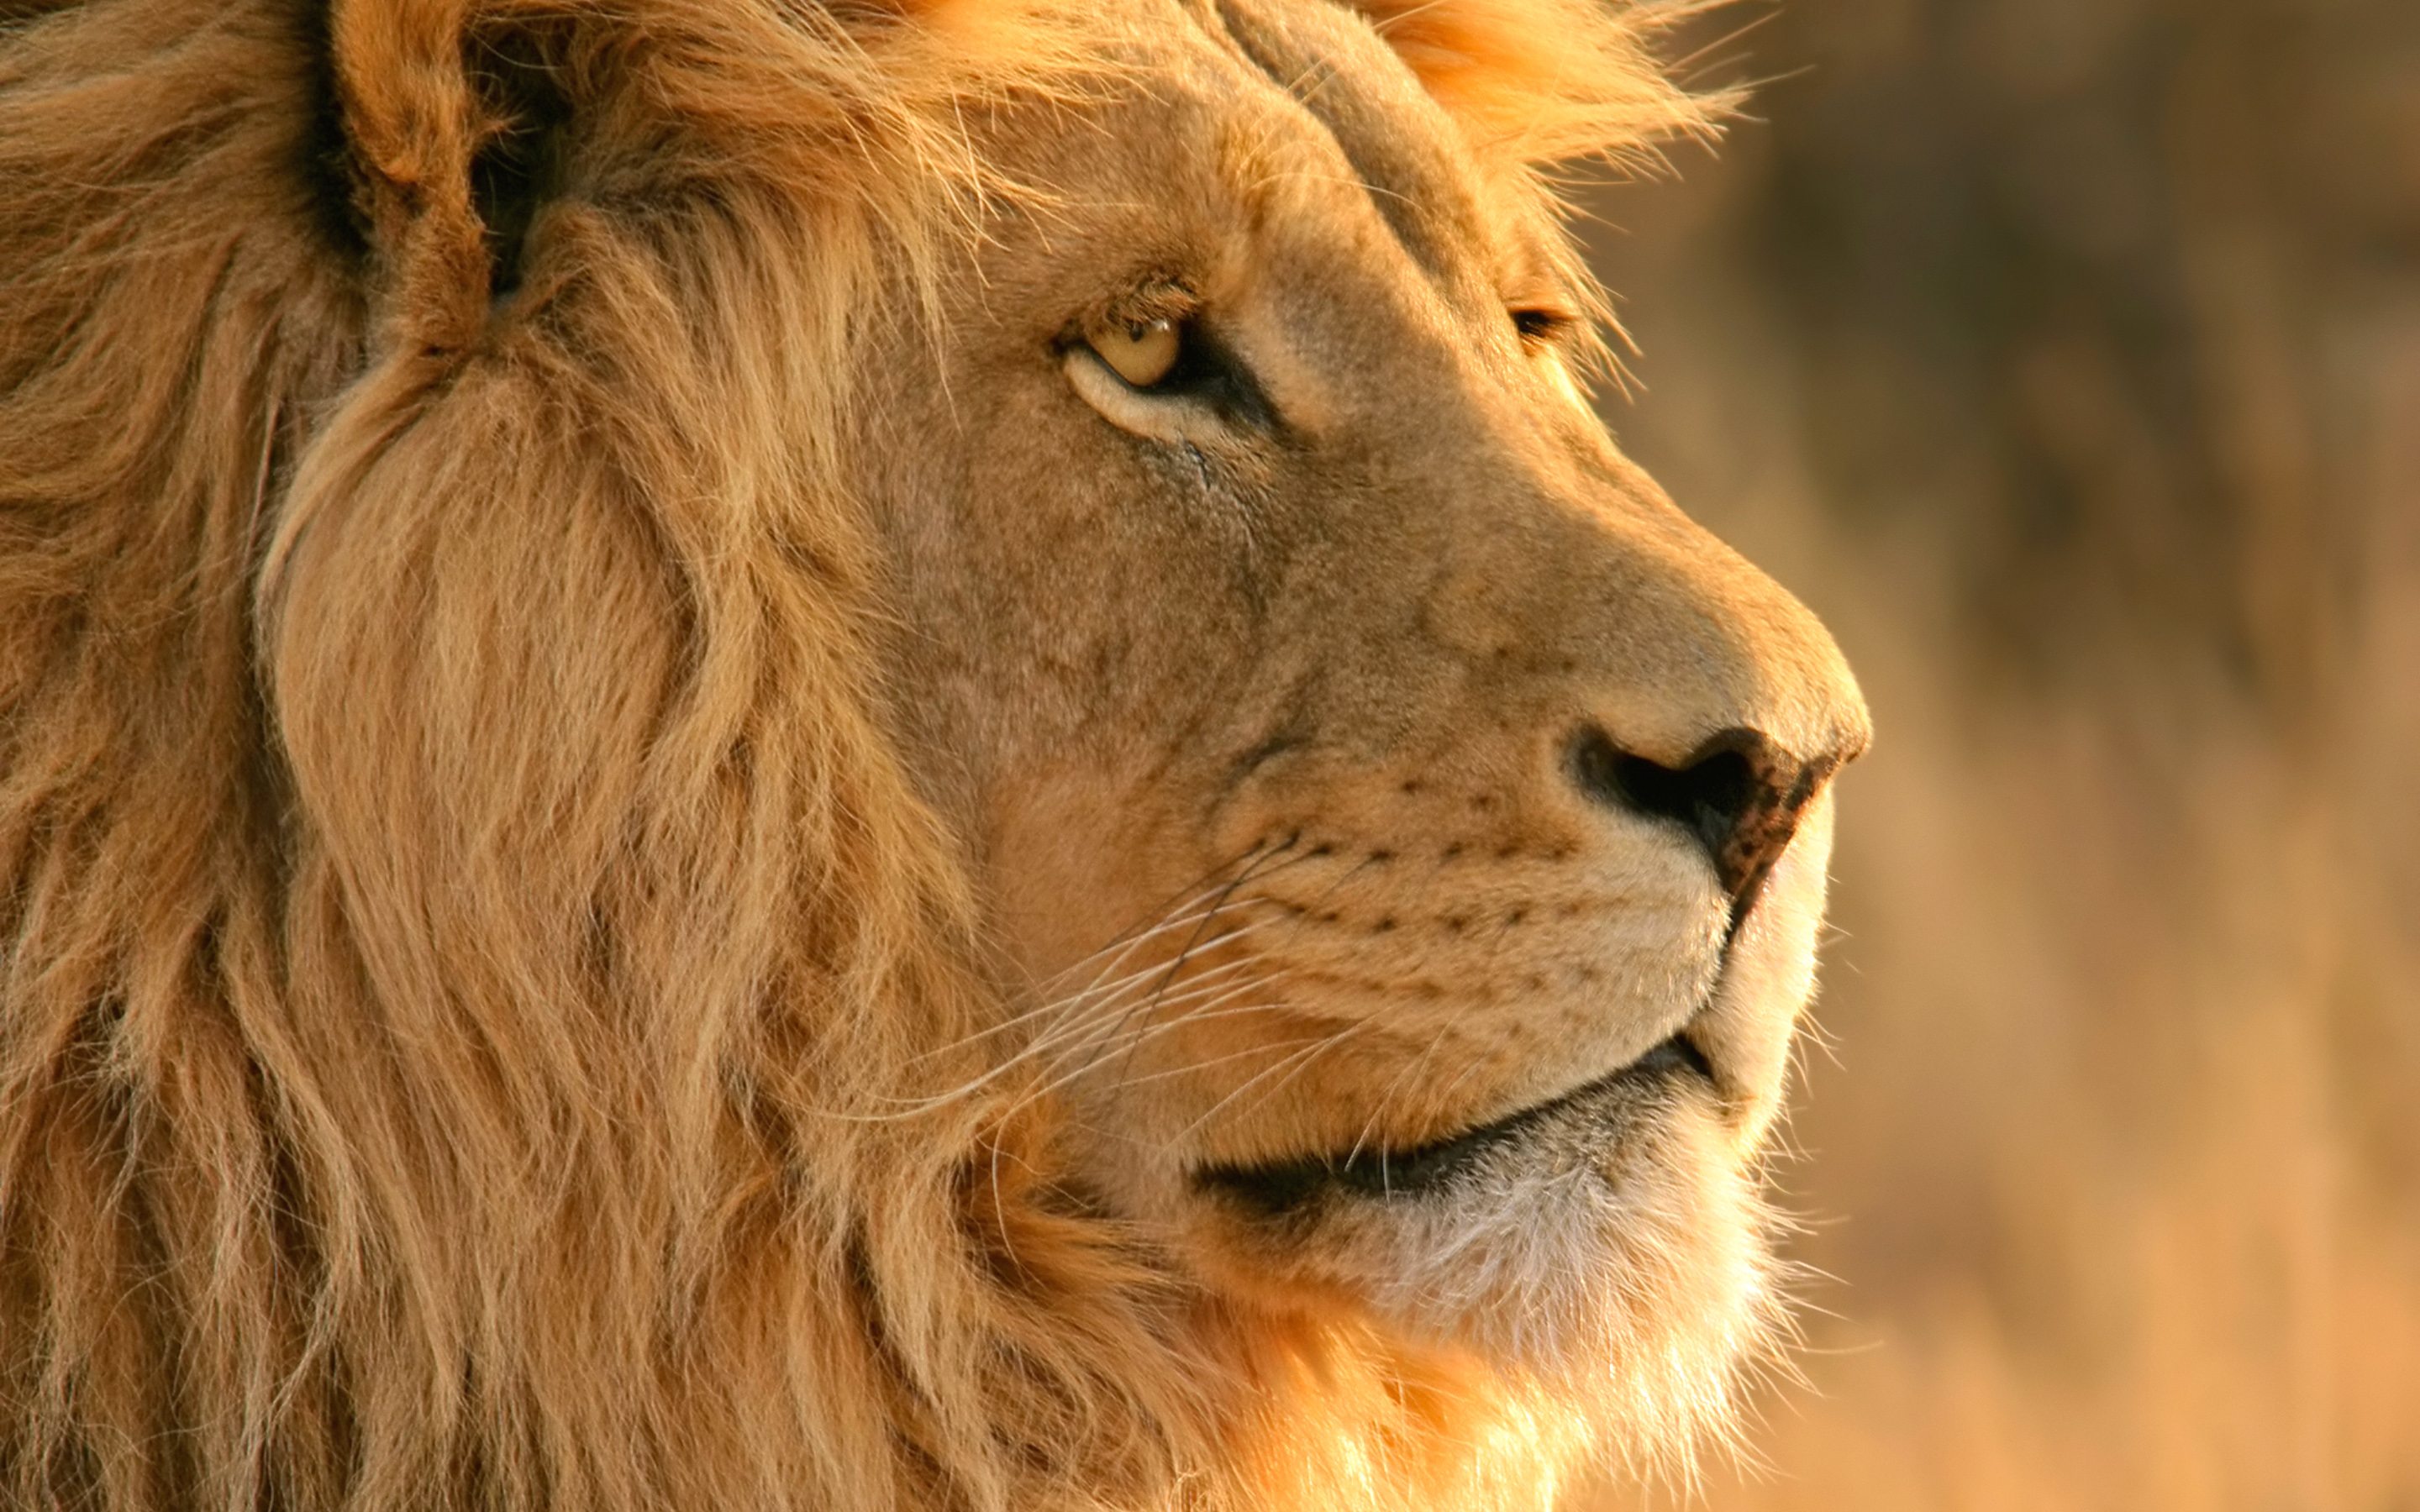 fond d'écran de lion,lion,cheveux,faune,animal terrestre,lion masai